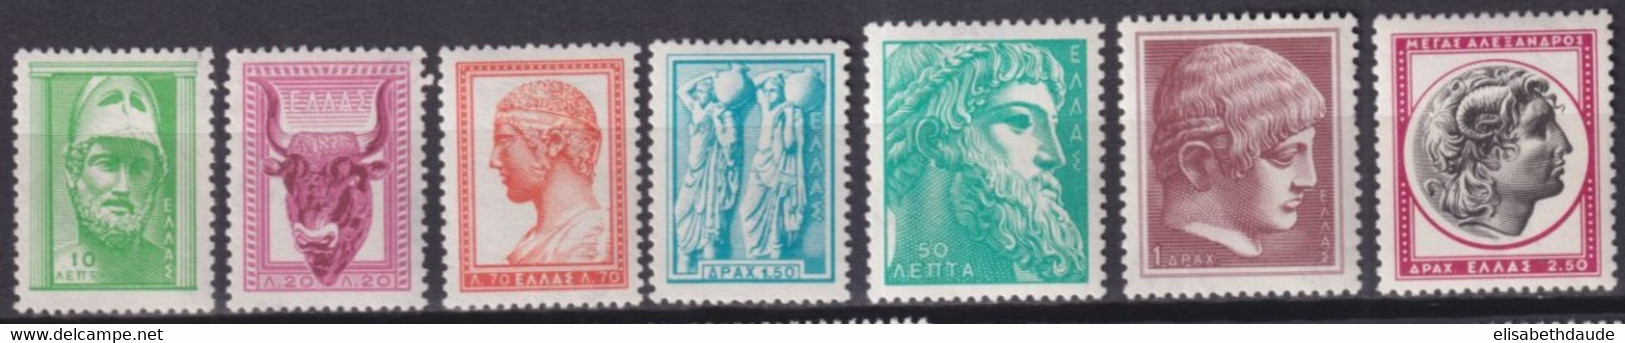 GRECE - 1958 - YVERT N°668/674A ** MNH  - COTE = 45 EUR - Ongebruikt